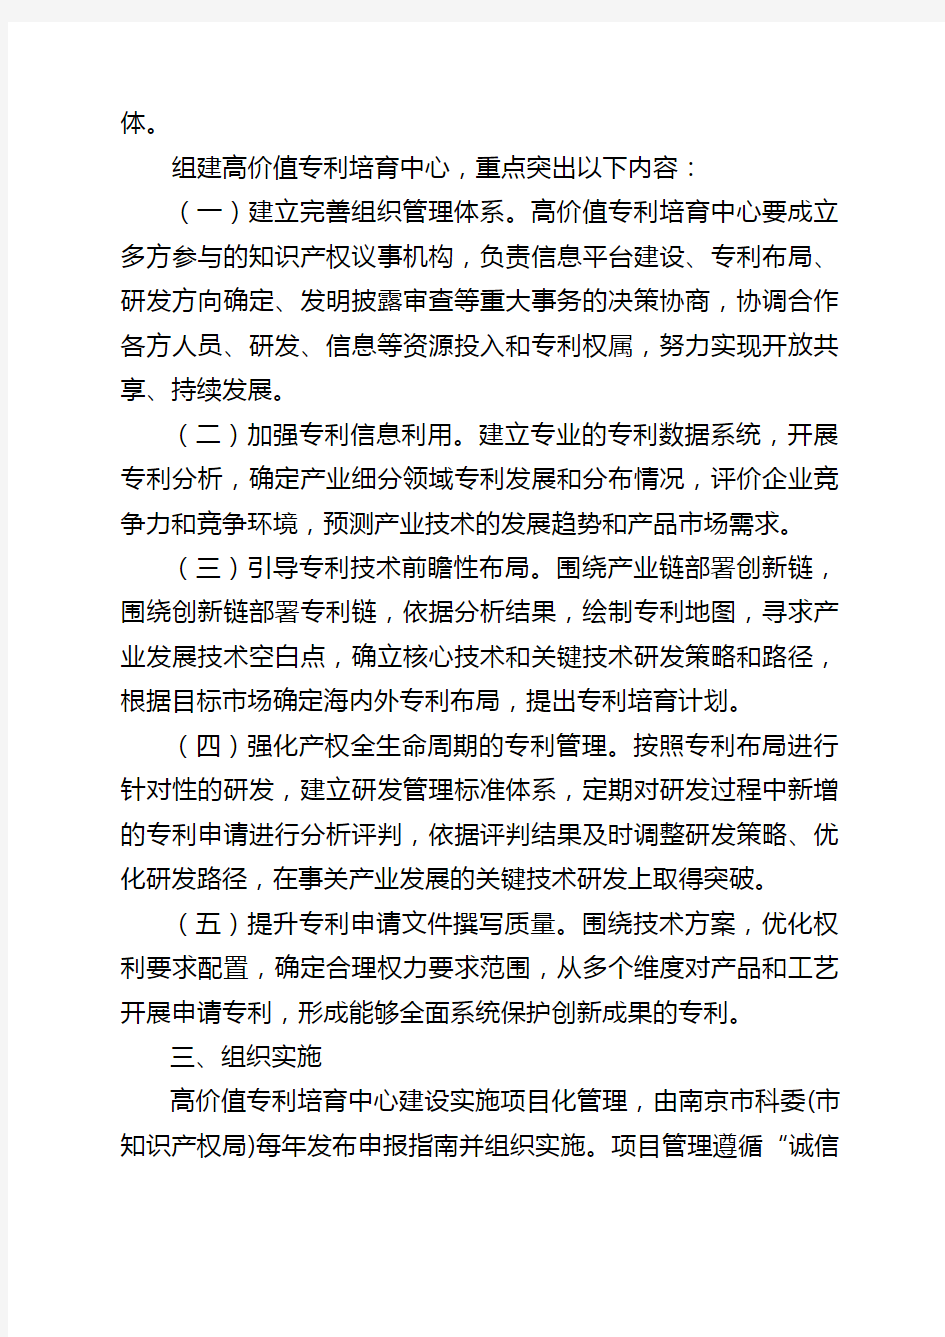 南京市高价值专利培育中心建设实施方案